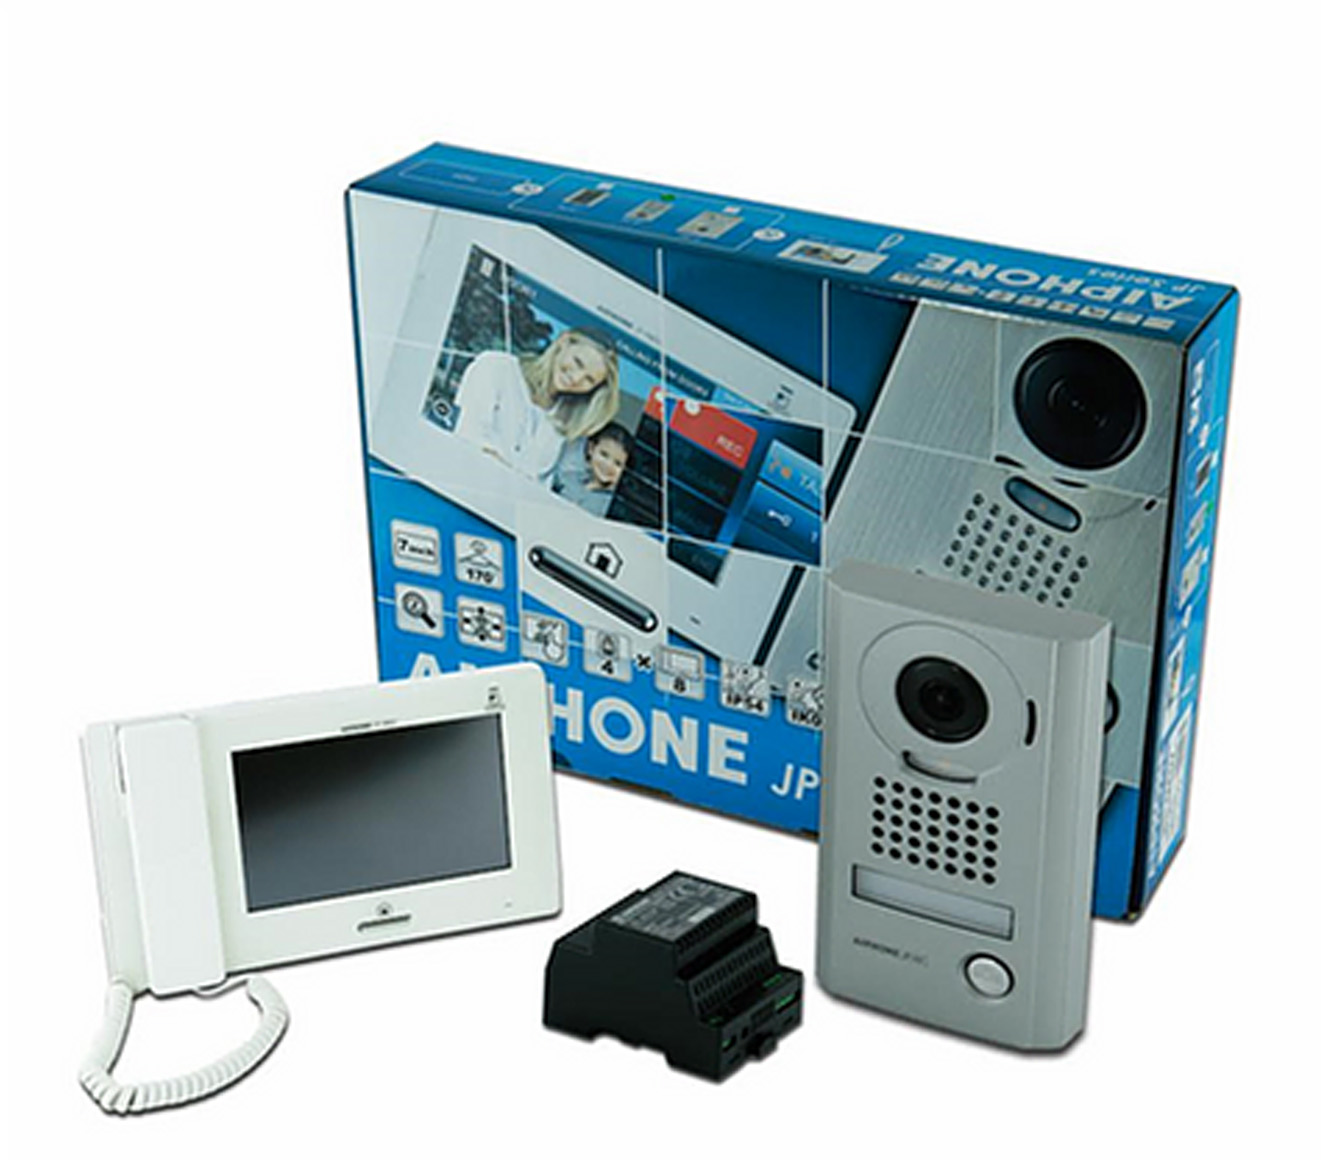 Aiphone JP SERIES Video Kit